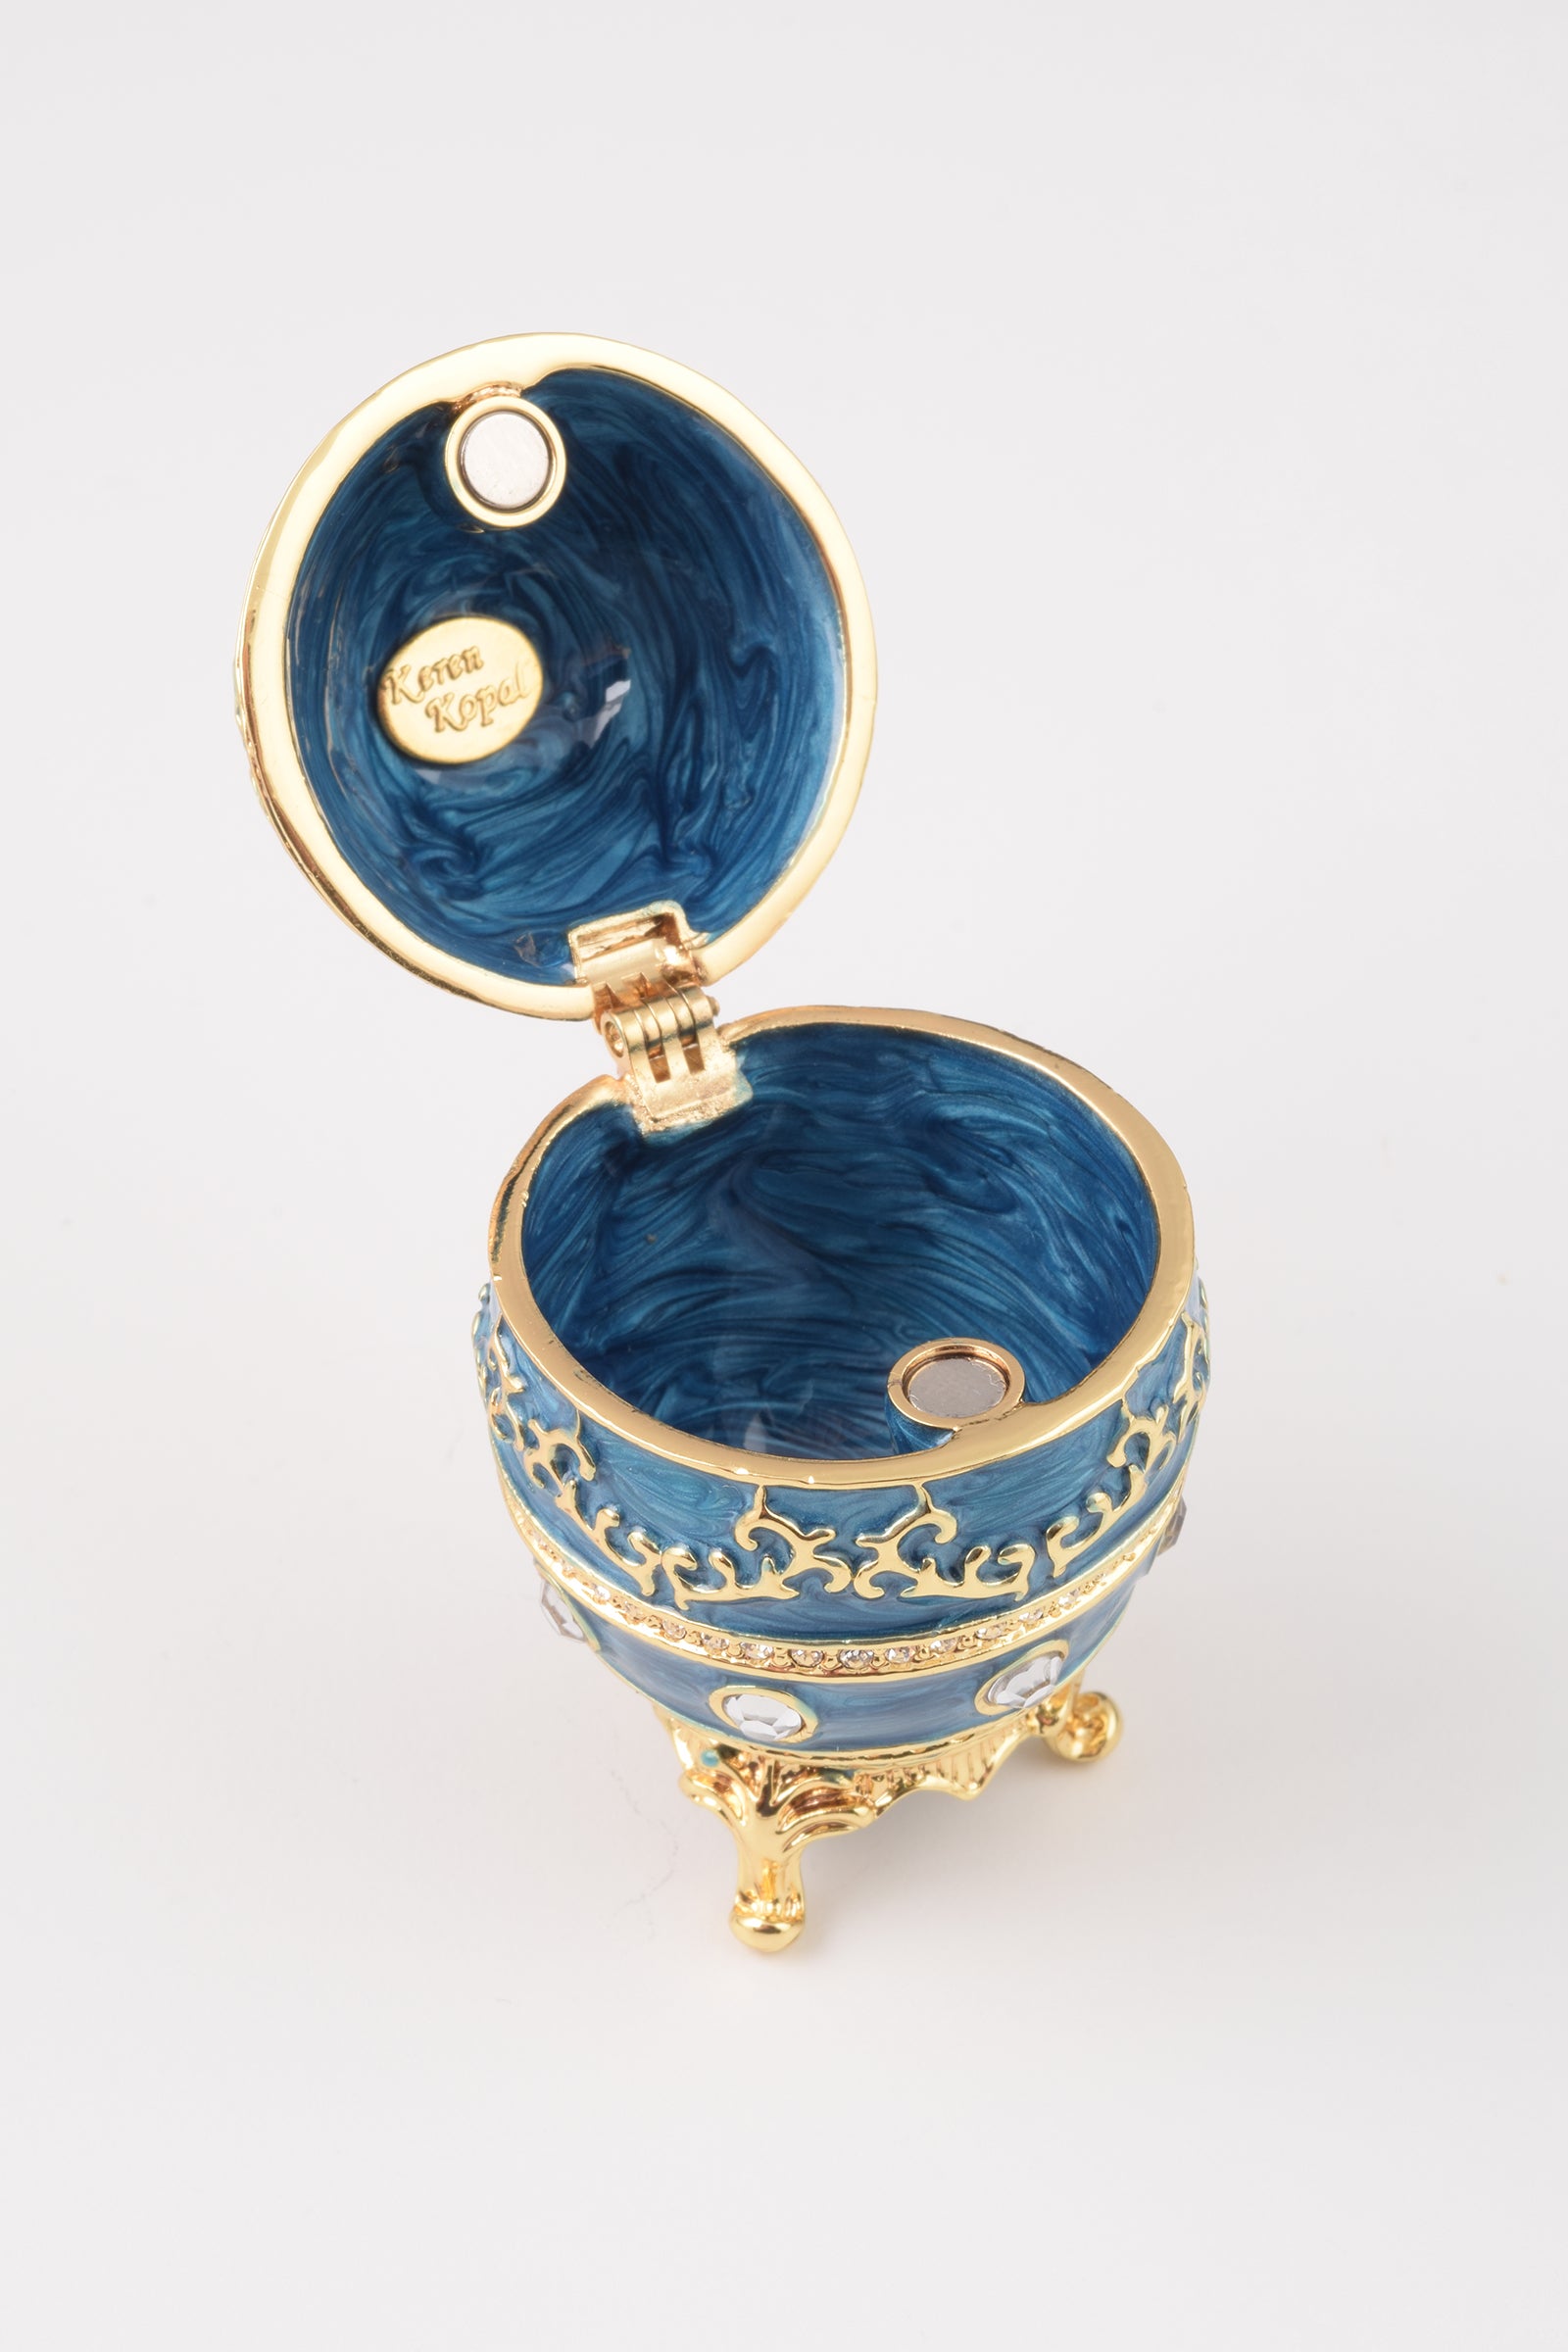 Oeuf de Fabergé bleu